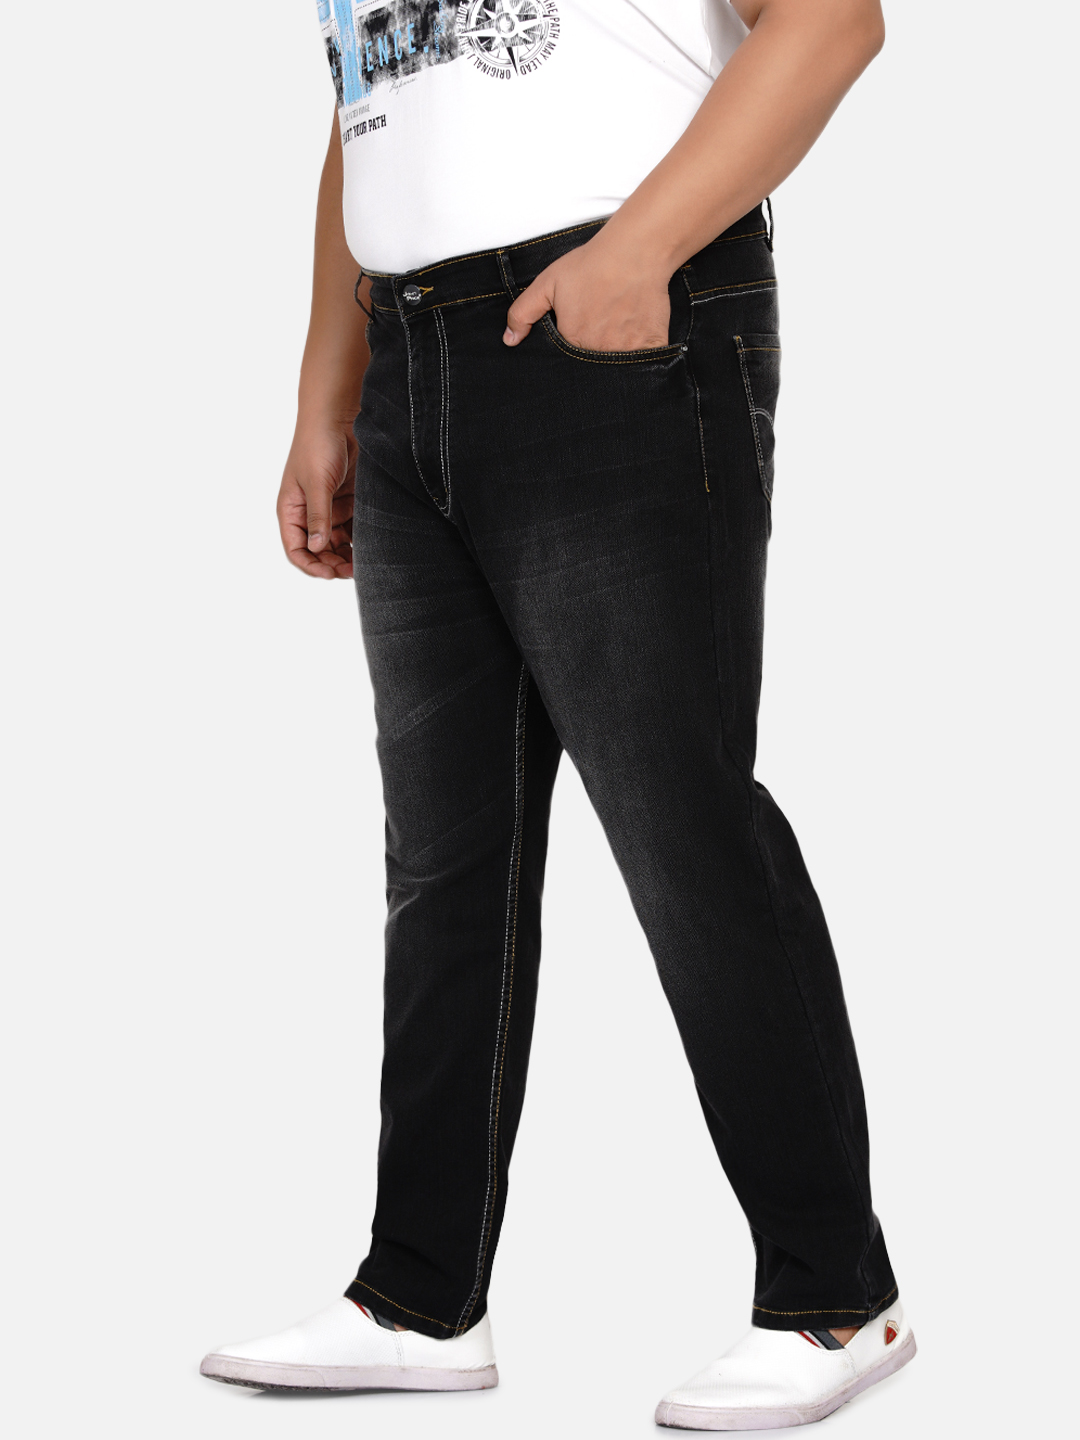 bottomwear/jeans/EJPJ2027/ejpj2027-4.jpg